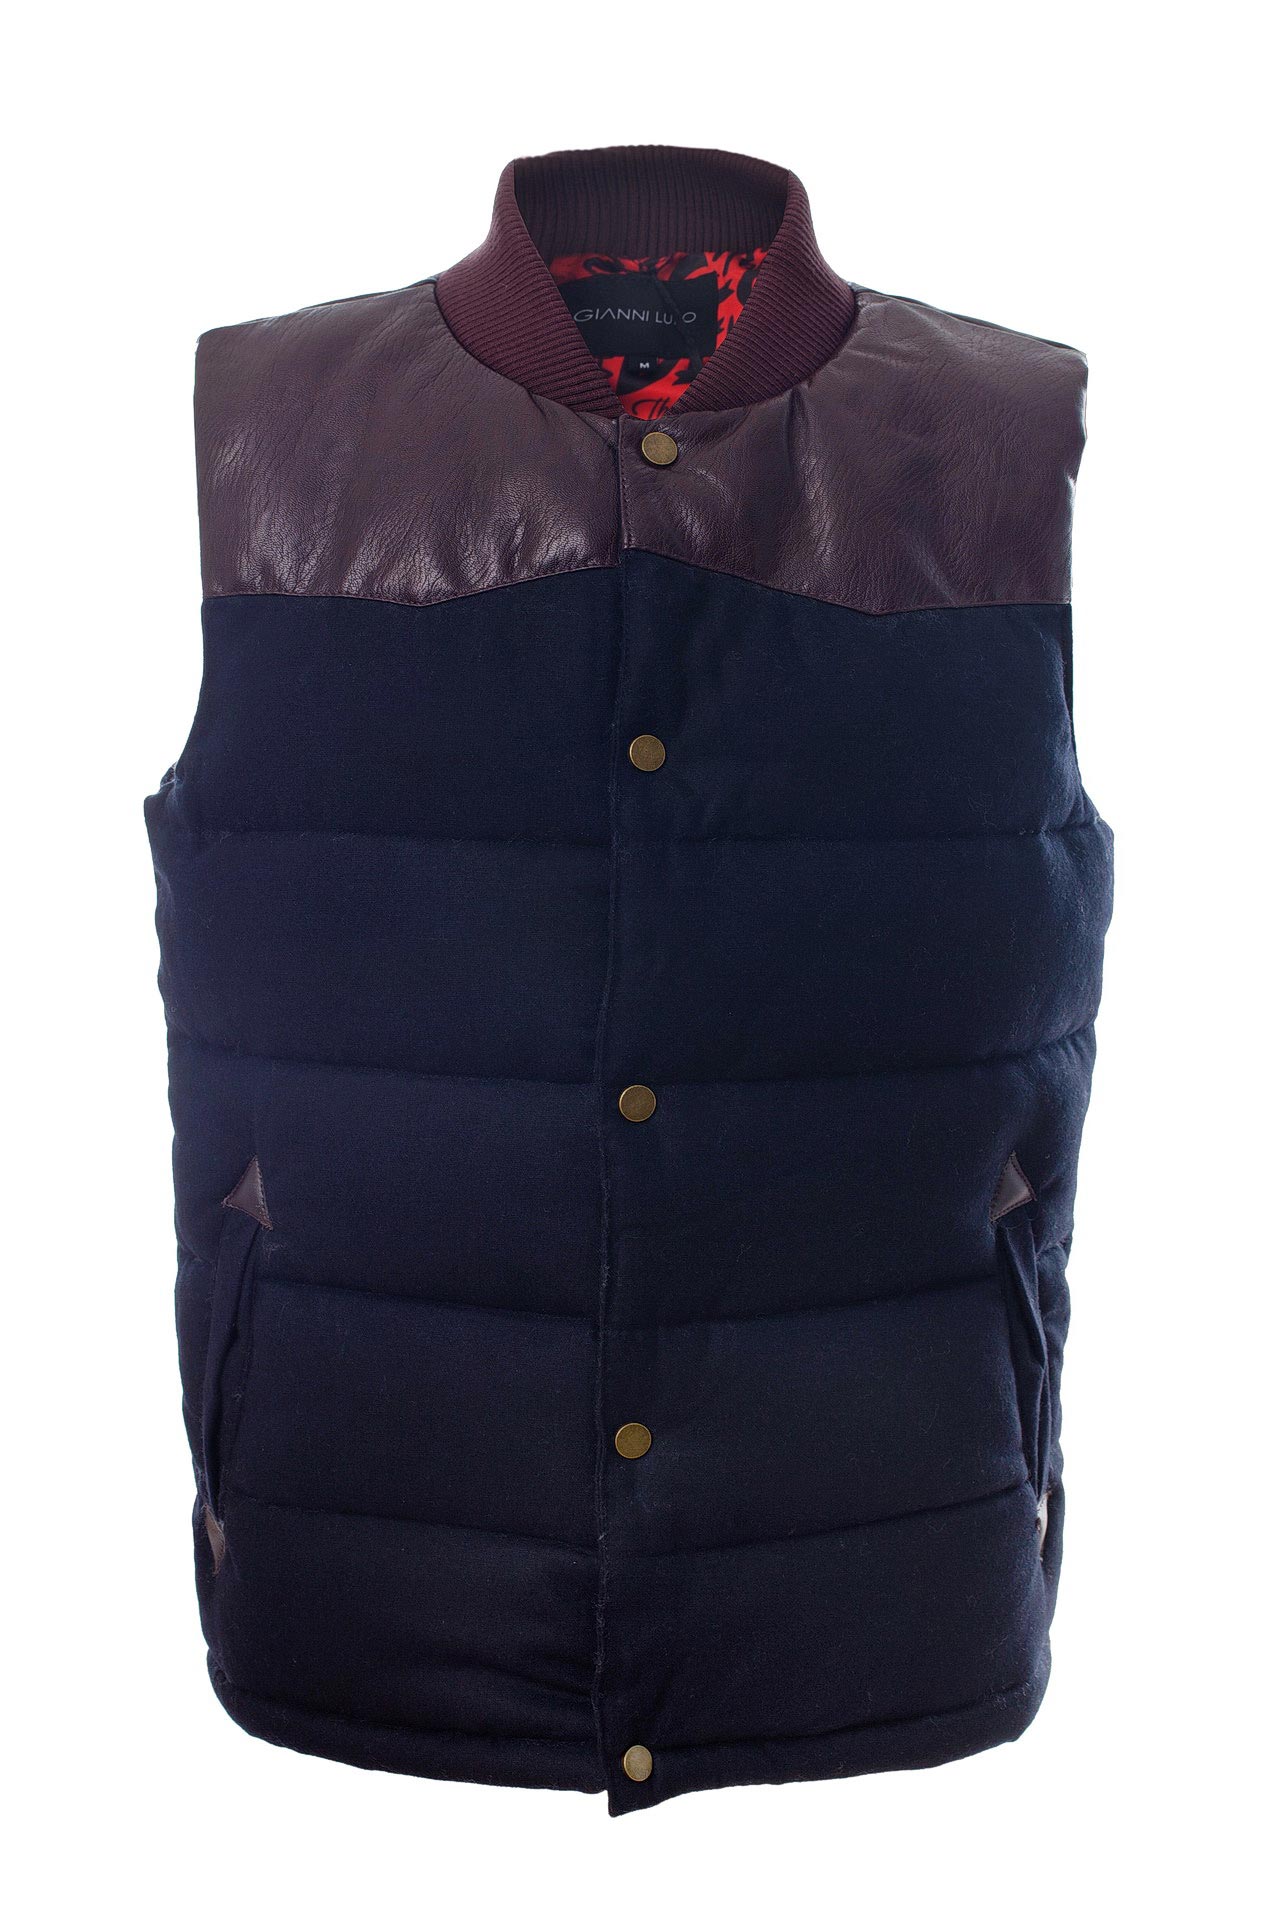 Одежда мужская Жилет GIANNI LUPO (GL9221-1/18.1). Купить за 5800 руб.